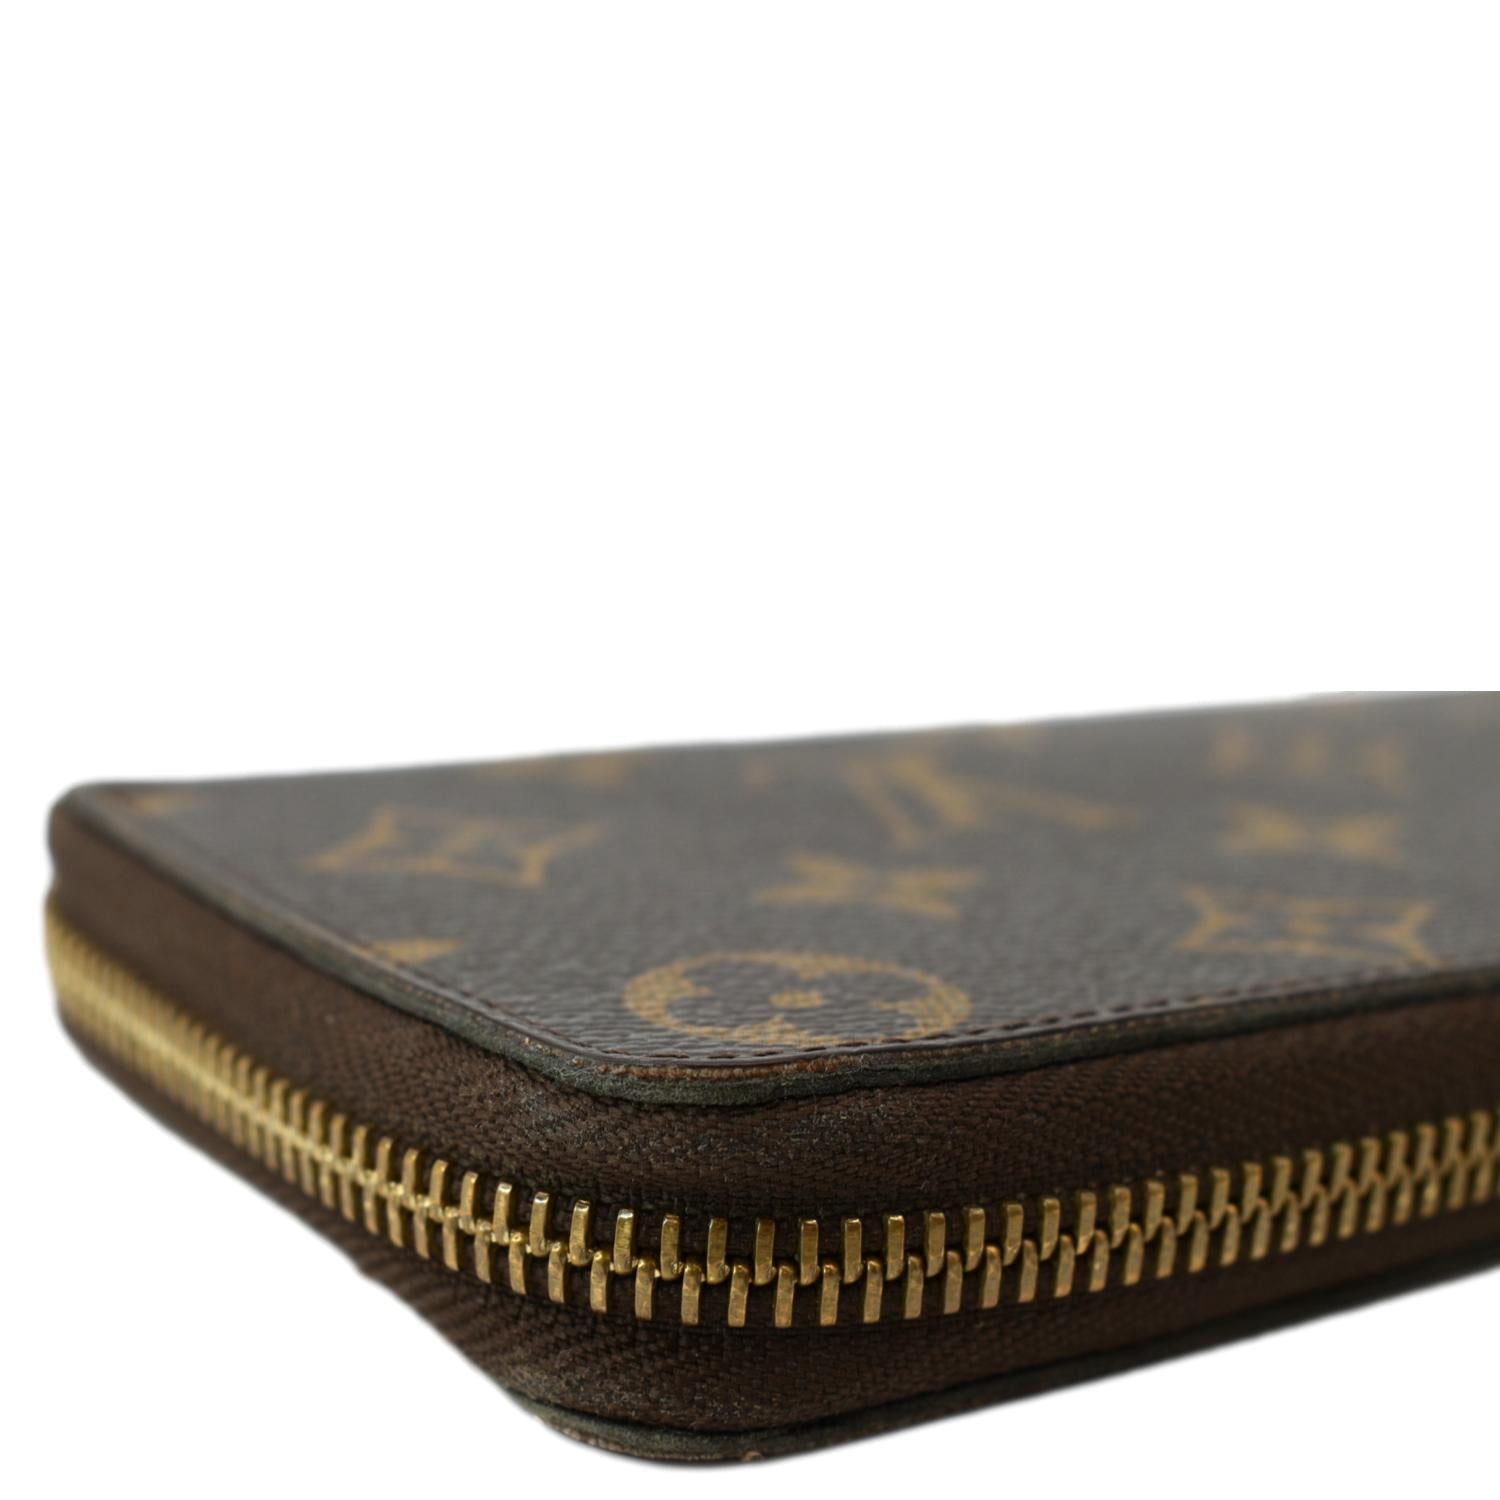 Louis Vuitton zip clemence wallet (compact zip)